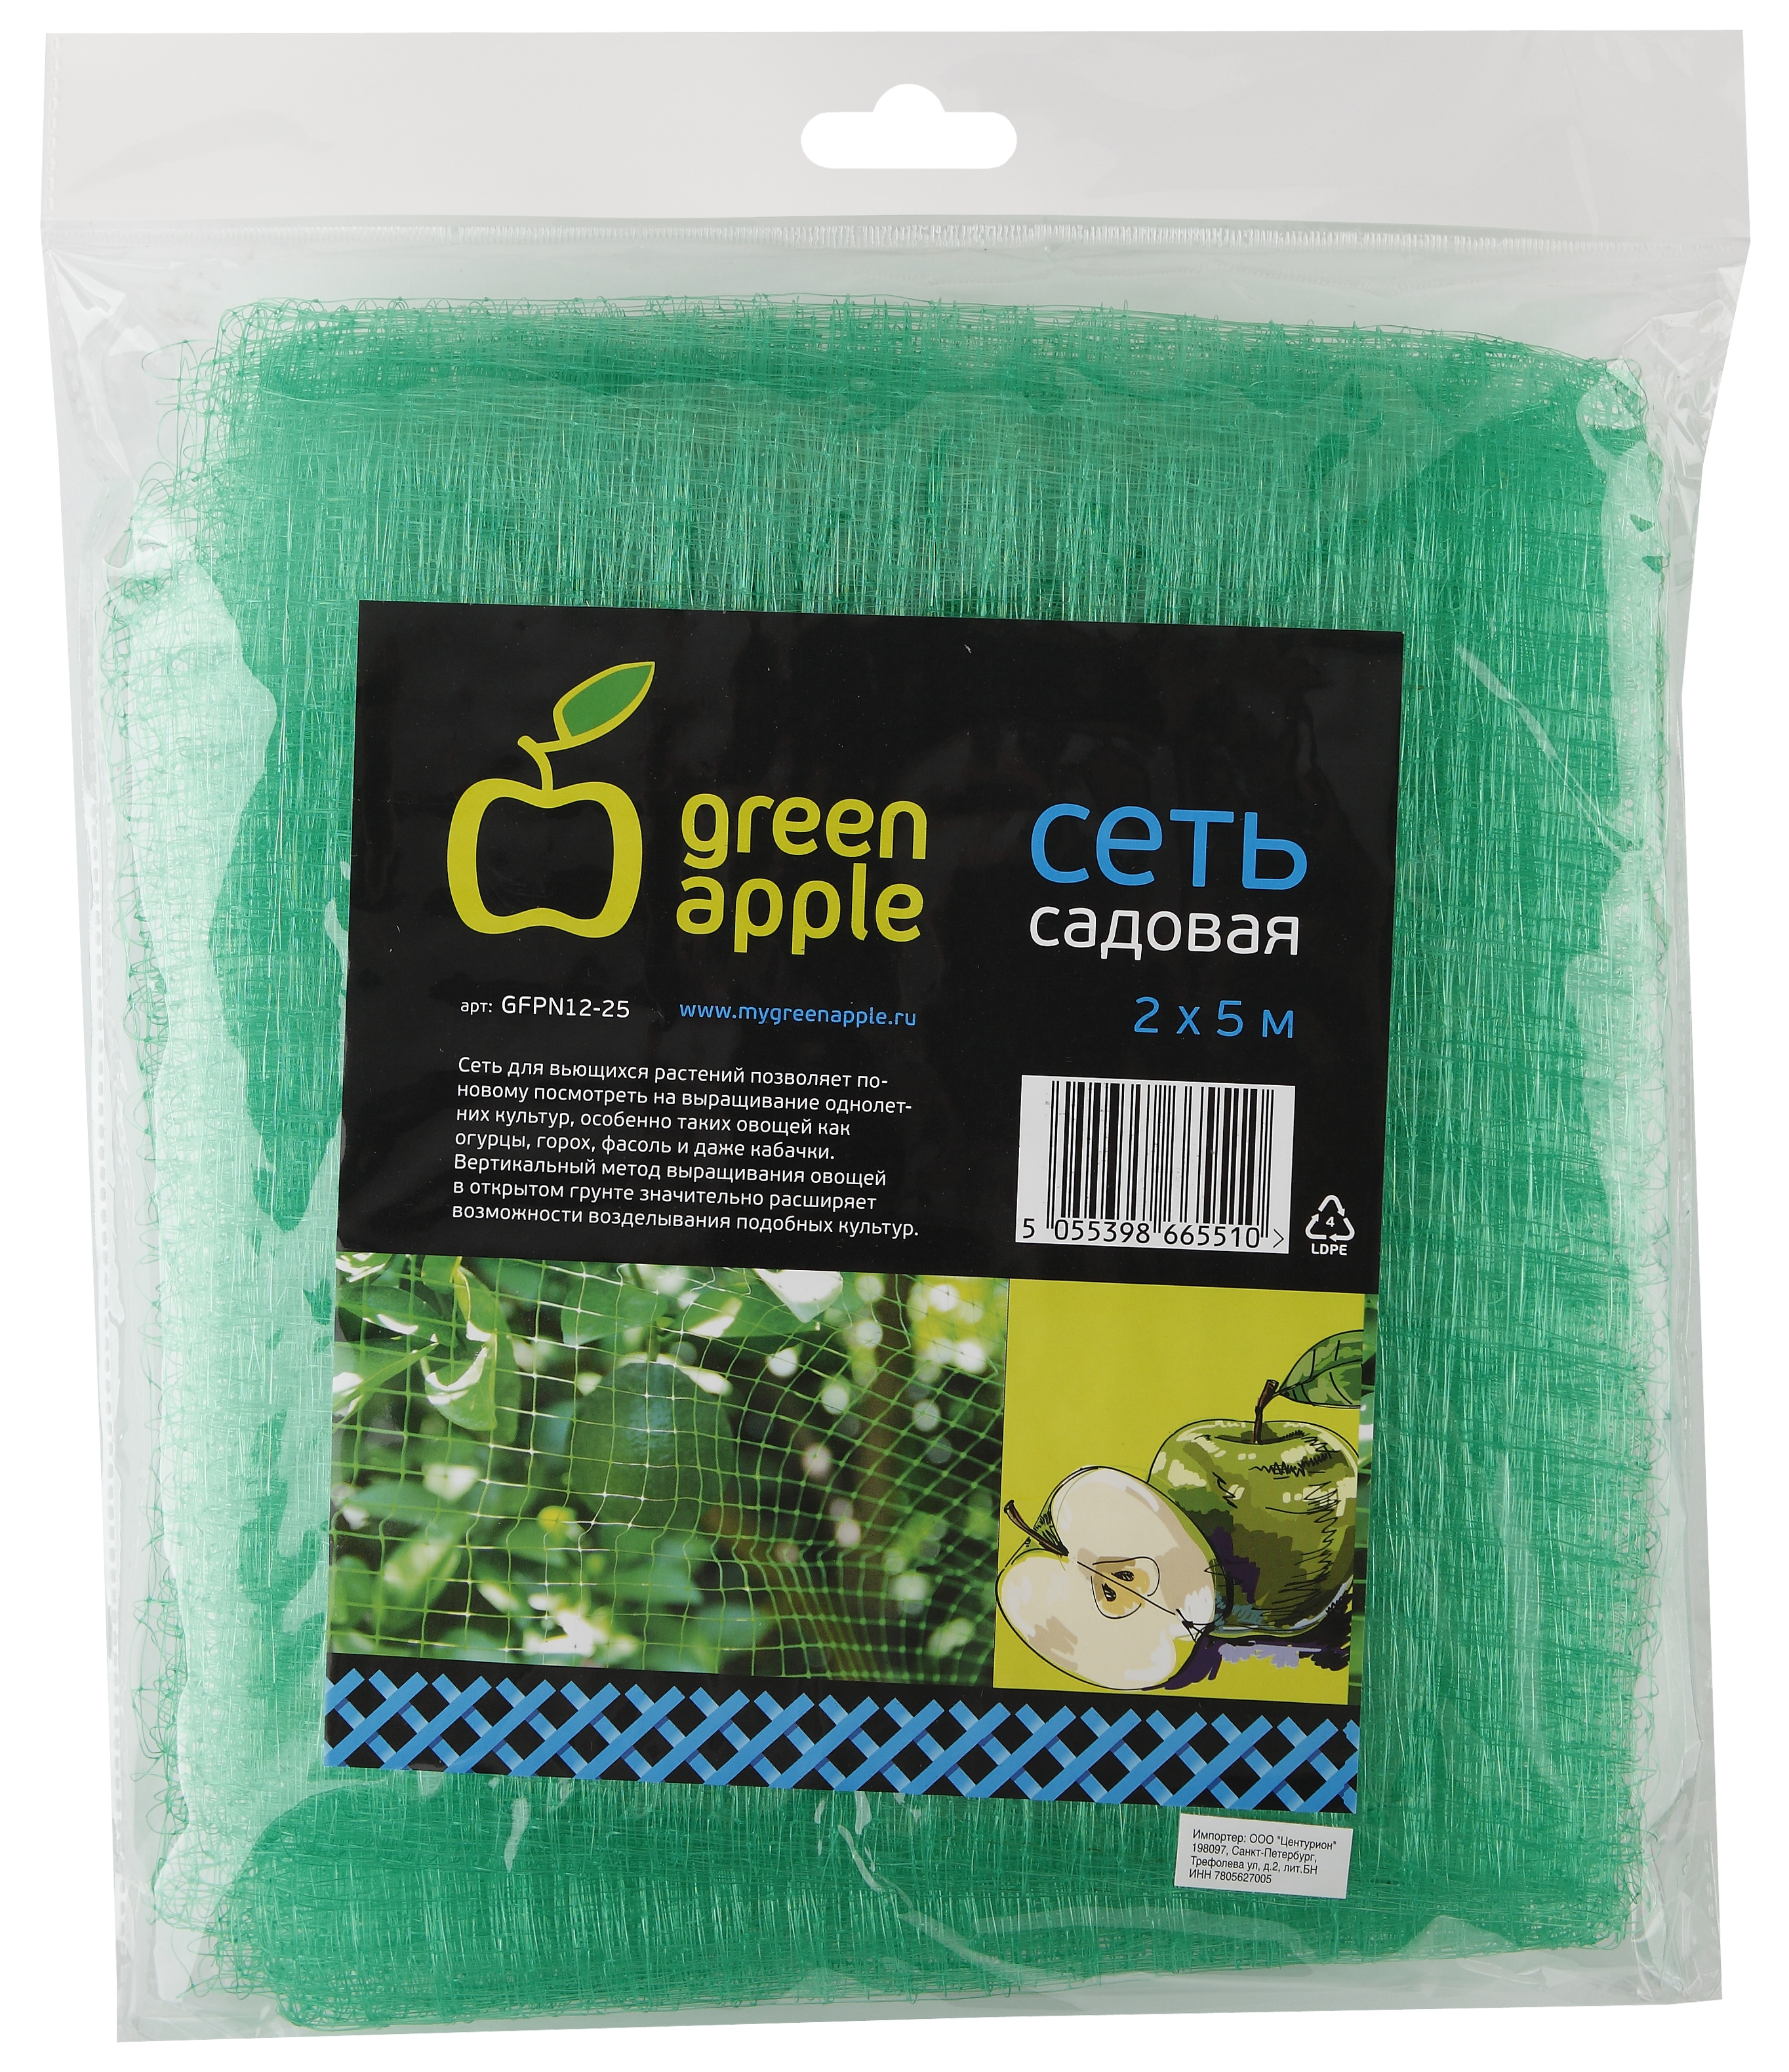 Сеть садовая защита от птиц GREEN APPLE GFPN12-25-1 2 х 5 метра набор из 2 для OZON